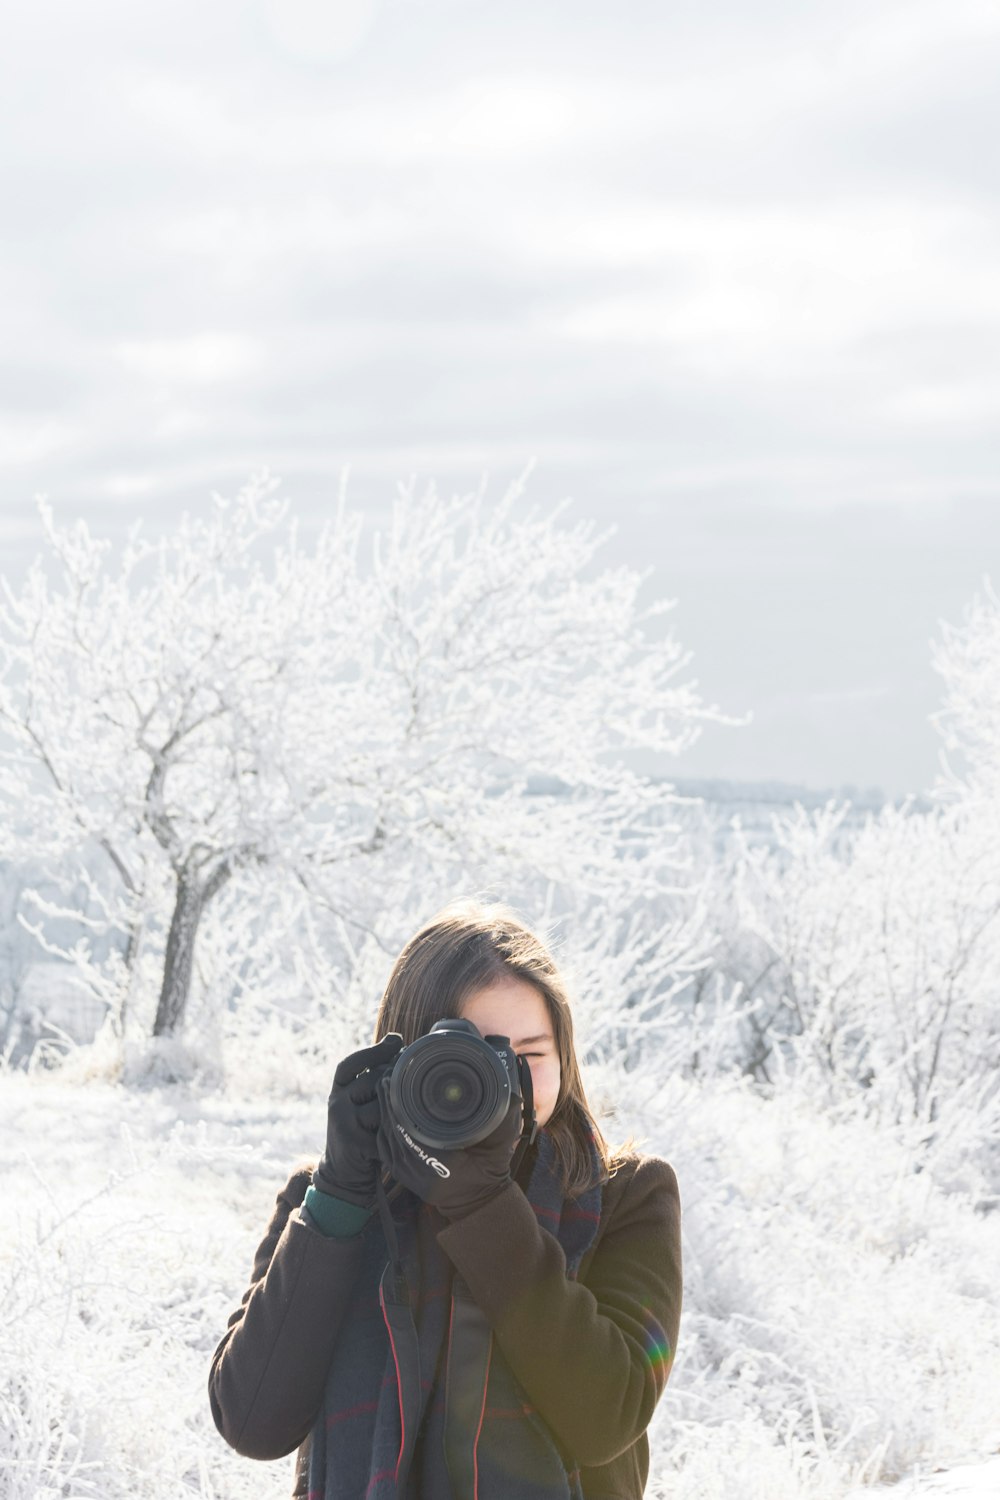 Femme en veste marron tenant un appareil photo reflex numérique noir